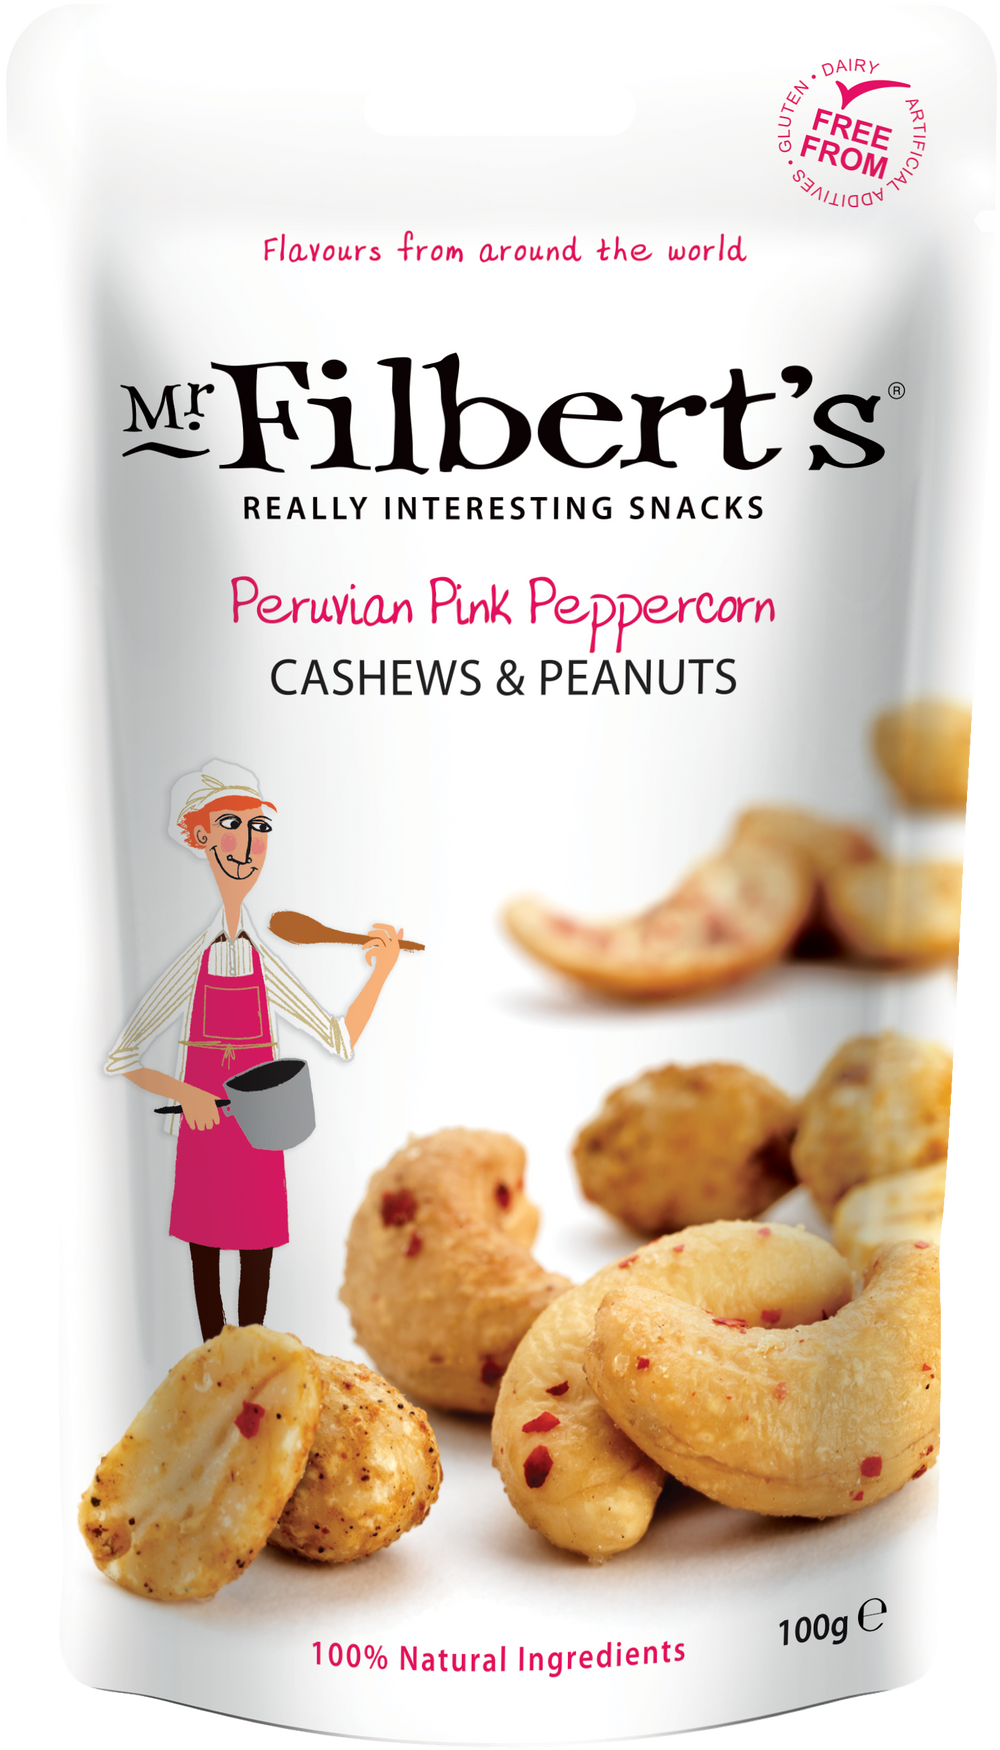 Peruvian Pink Peppercorn Cashews and Peanuts